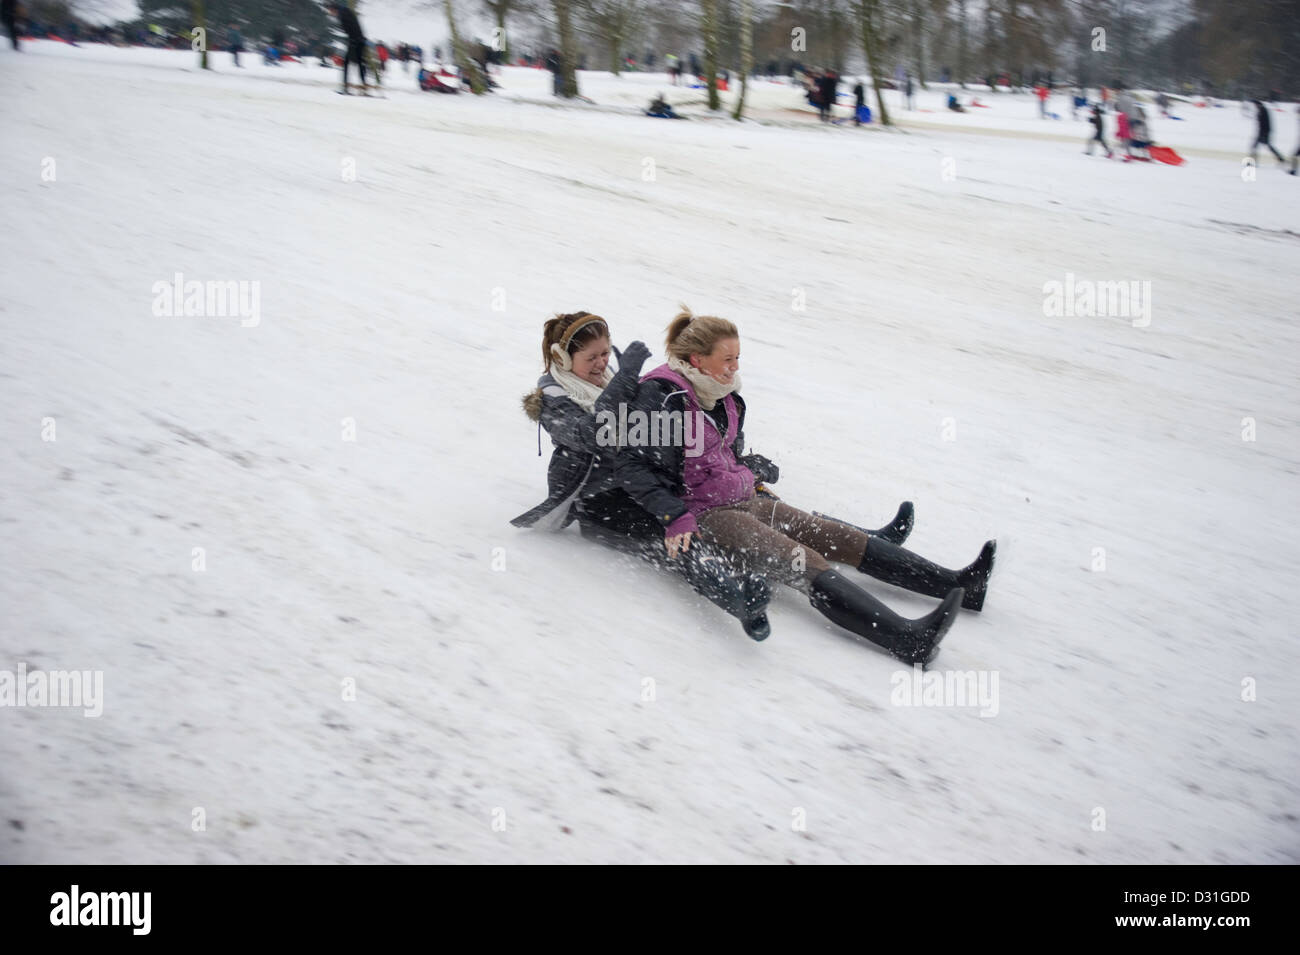 Zwei junge Mädchen im Teenageralter auf einem Schlitten oder Rodel bergab mit Geschwindigkeit im Schnee. Stockfoto